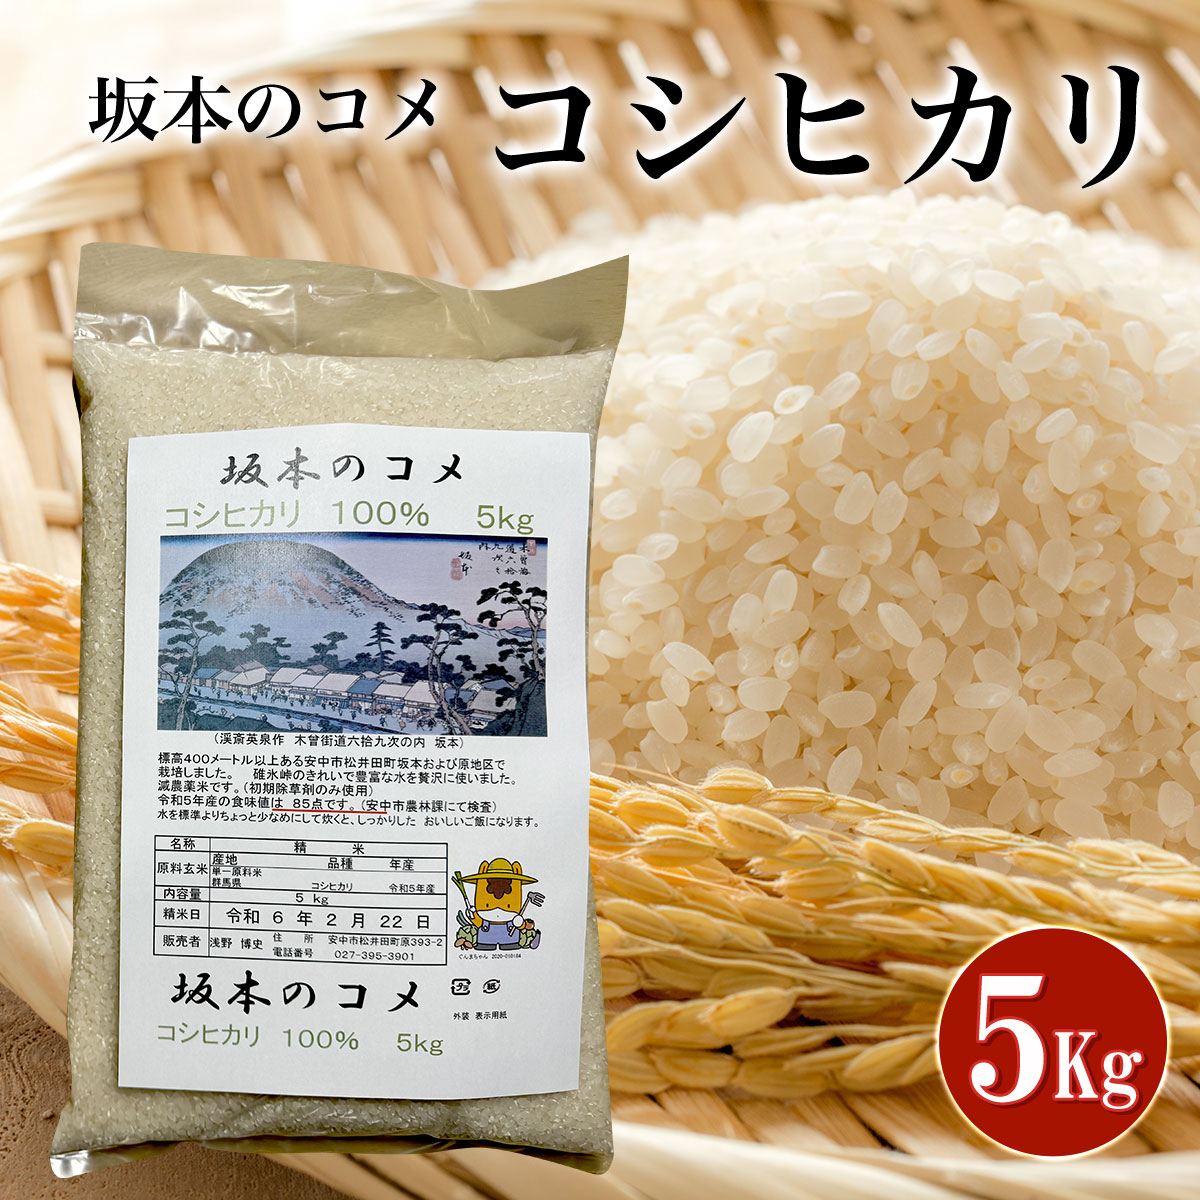 坂本のコメ コシヒカリ 5kg ANA001 / お米 精米 こしひかり 減農薬 減化学肥料米 送料無料 群馬県 安中市